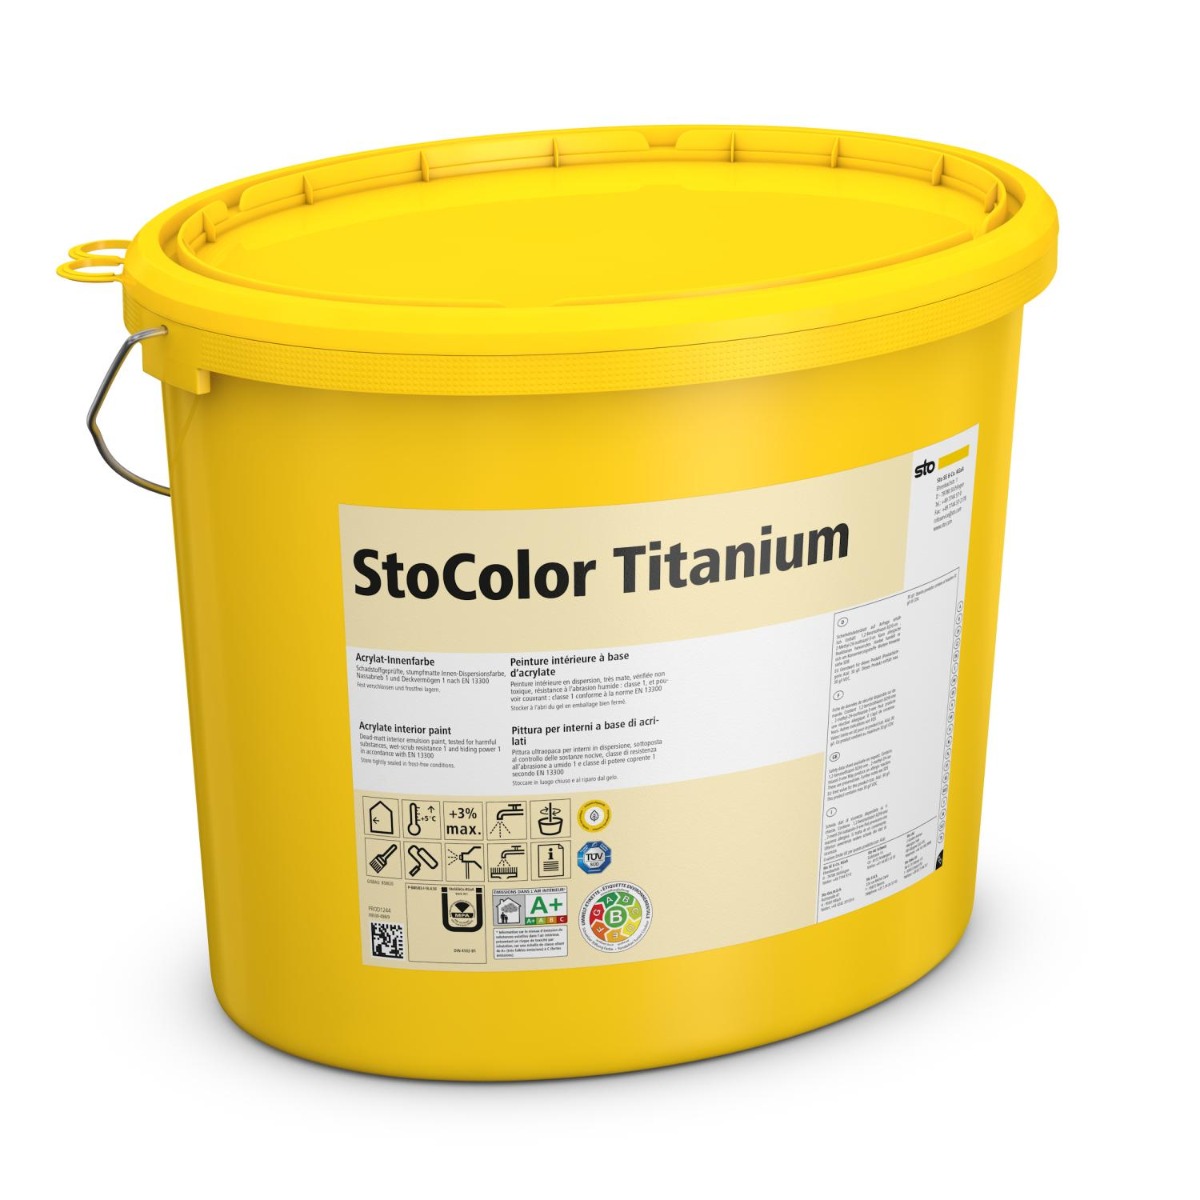 StoColor Titanium-10 Liter Eimer-Weiß